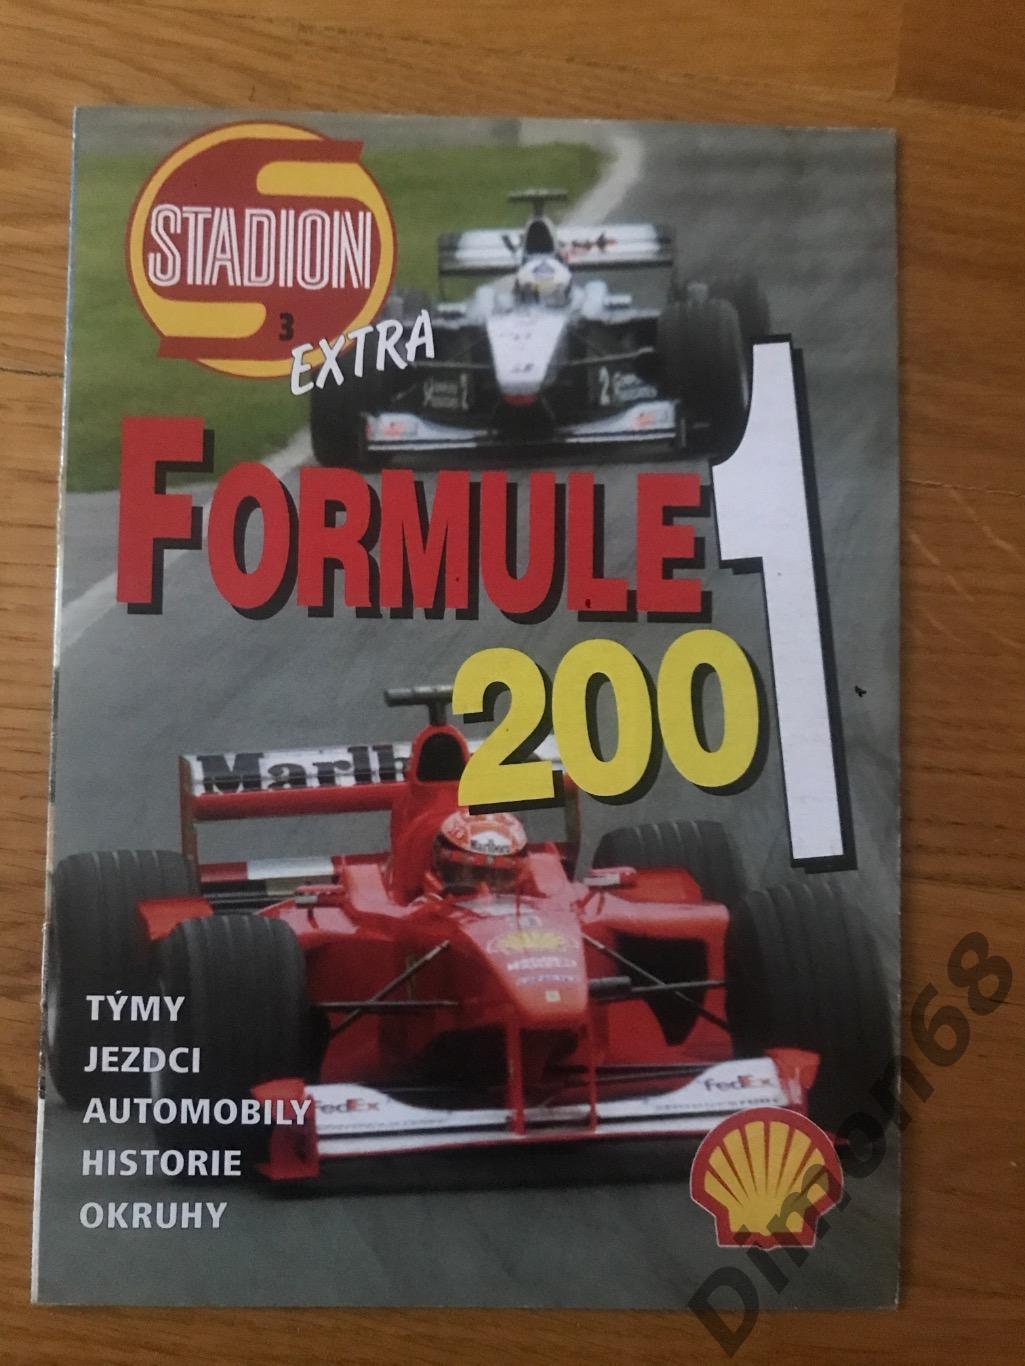 Stadion exstra Formule 1 2000